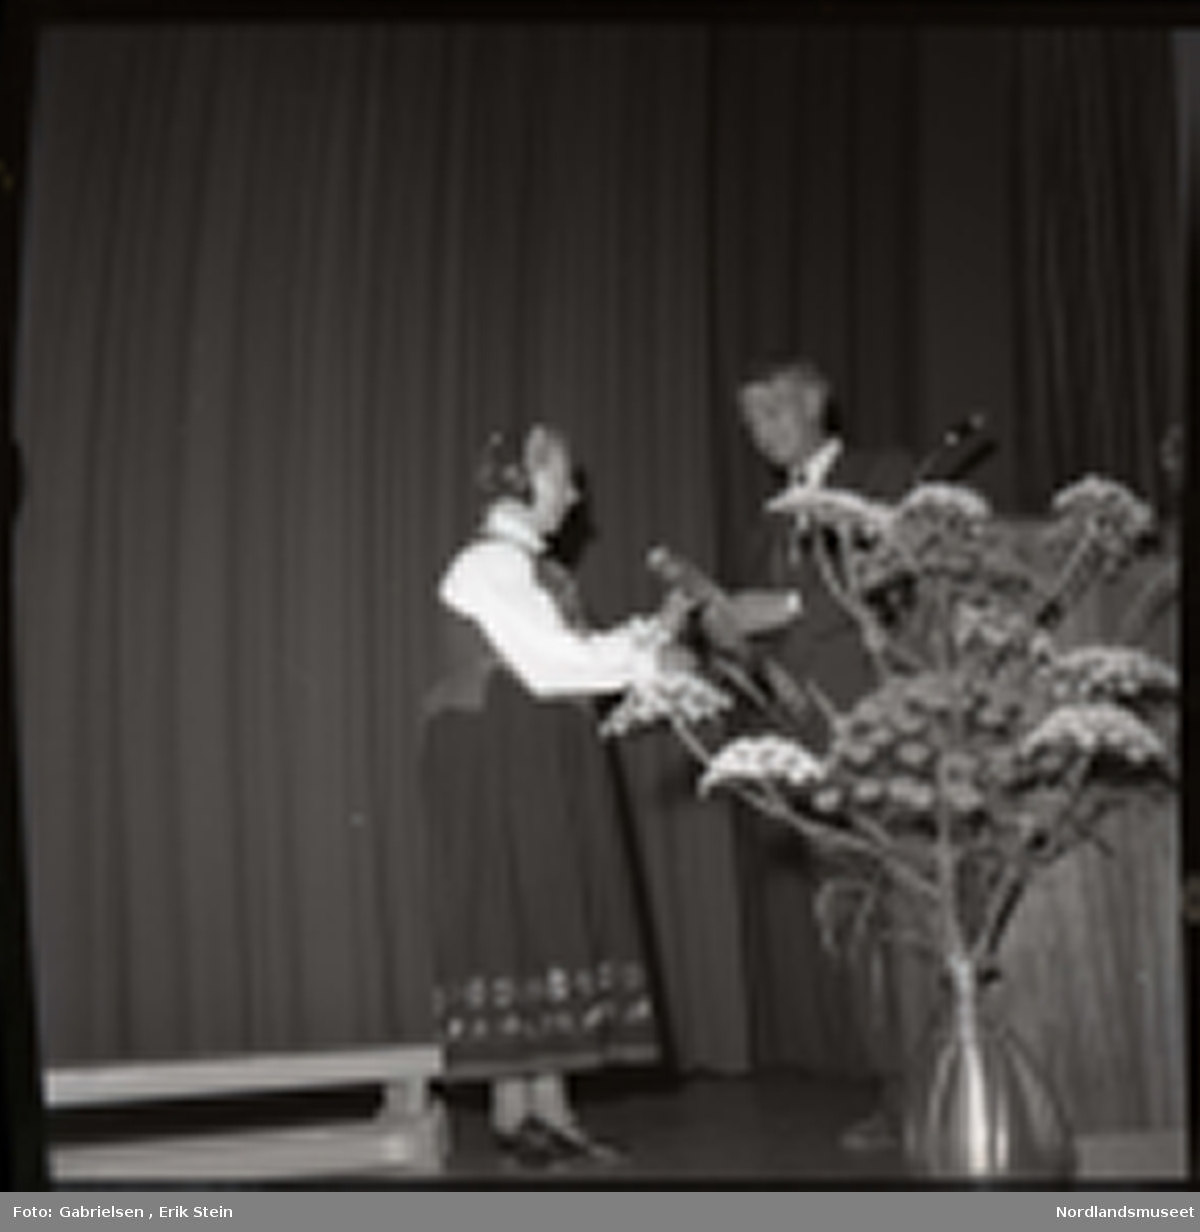 Fotografi av en eldre kvinne kledd i en bunad og en bunadshette som står på en scene i en sal og får utdelt en pris ev en mann kledd i dress med slips som står vedsiden av en talestol med en mikrofon og en stor blomsterkrukke 
som det vokser mange blomster i og en benk som står på scenen og man ser en rekke av blomstermønster på
bunaden til kvinnen i skjørtet på bunaden og bunadshetten